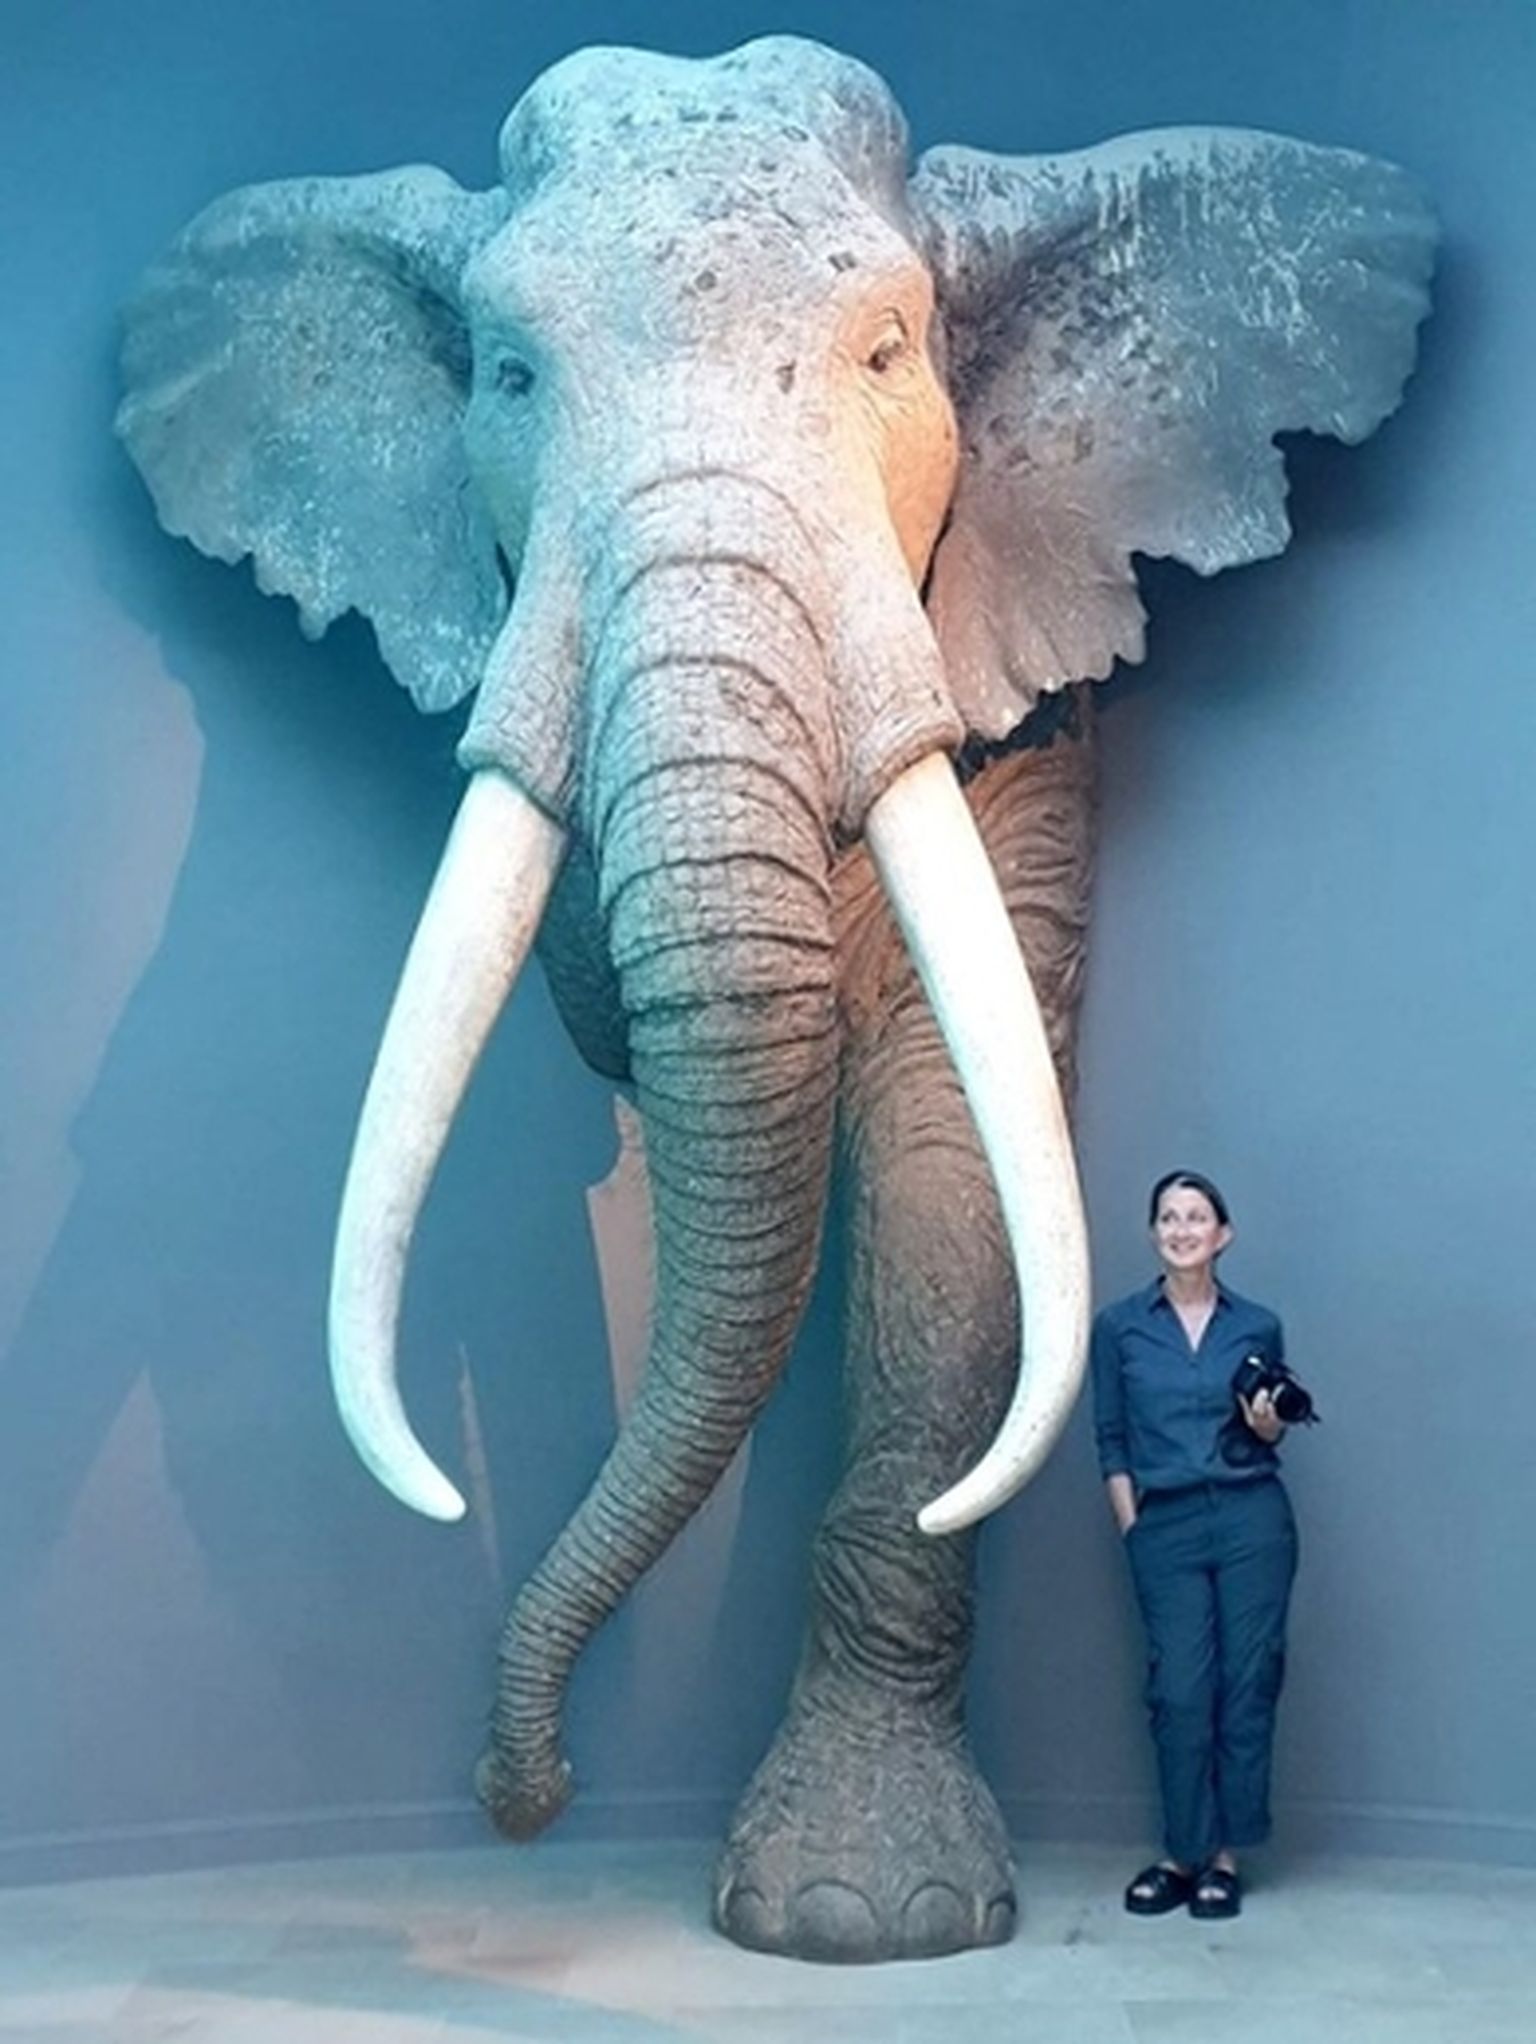 160 cm pikk uuringu juhtivautor Dr. Sabine Gaudzinski-Windheuser elusuuruses konstruktsiooniga sirgvõhalisest elevandist.